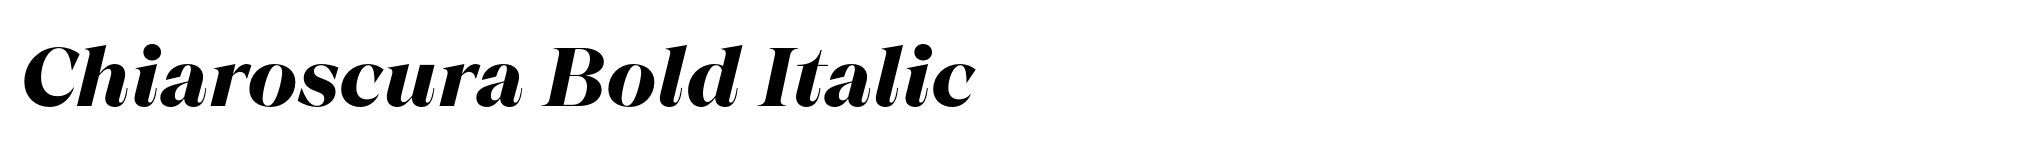 Chiaroscura Bold Italic image